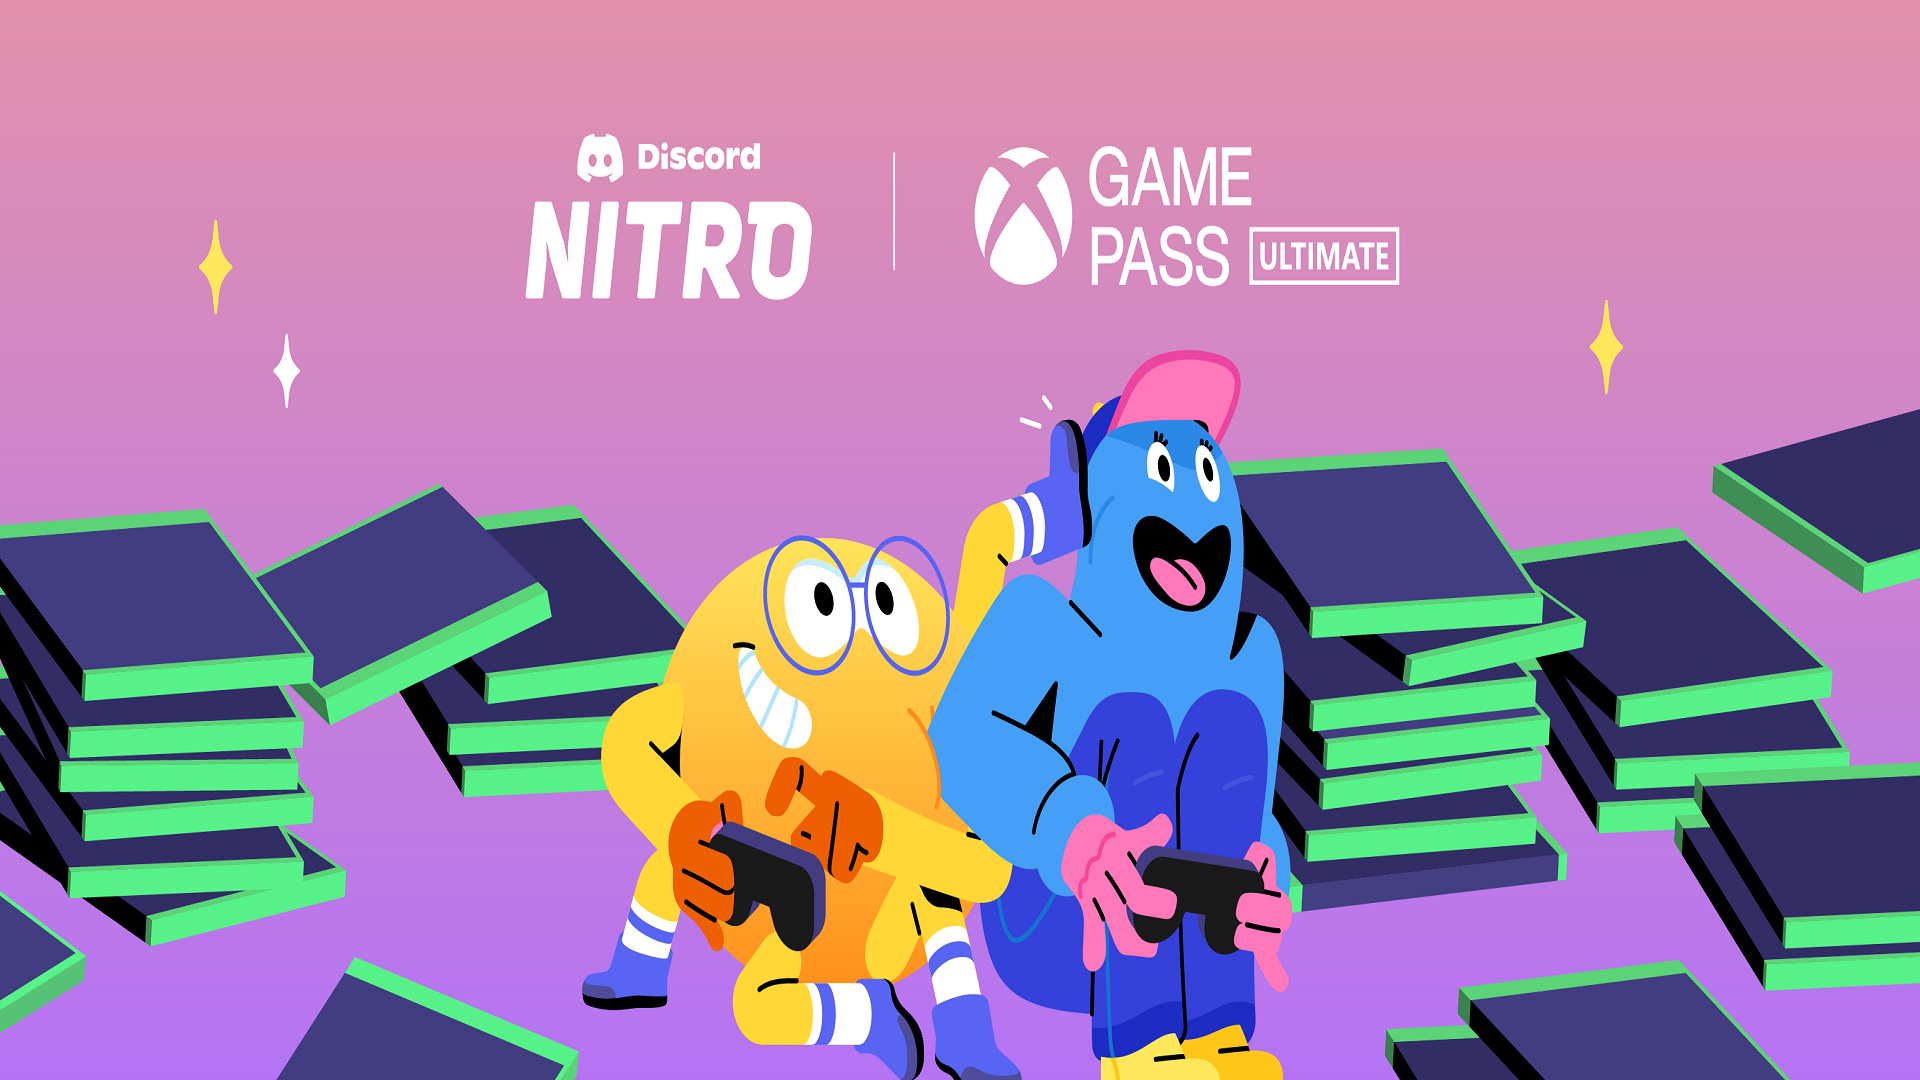 discord nitro xbox game pass link